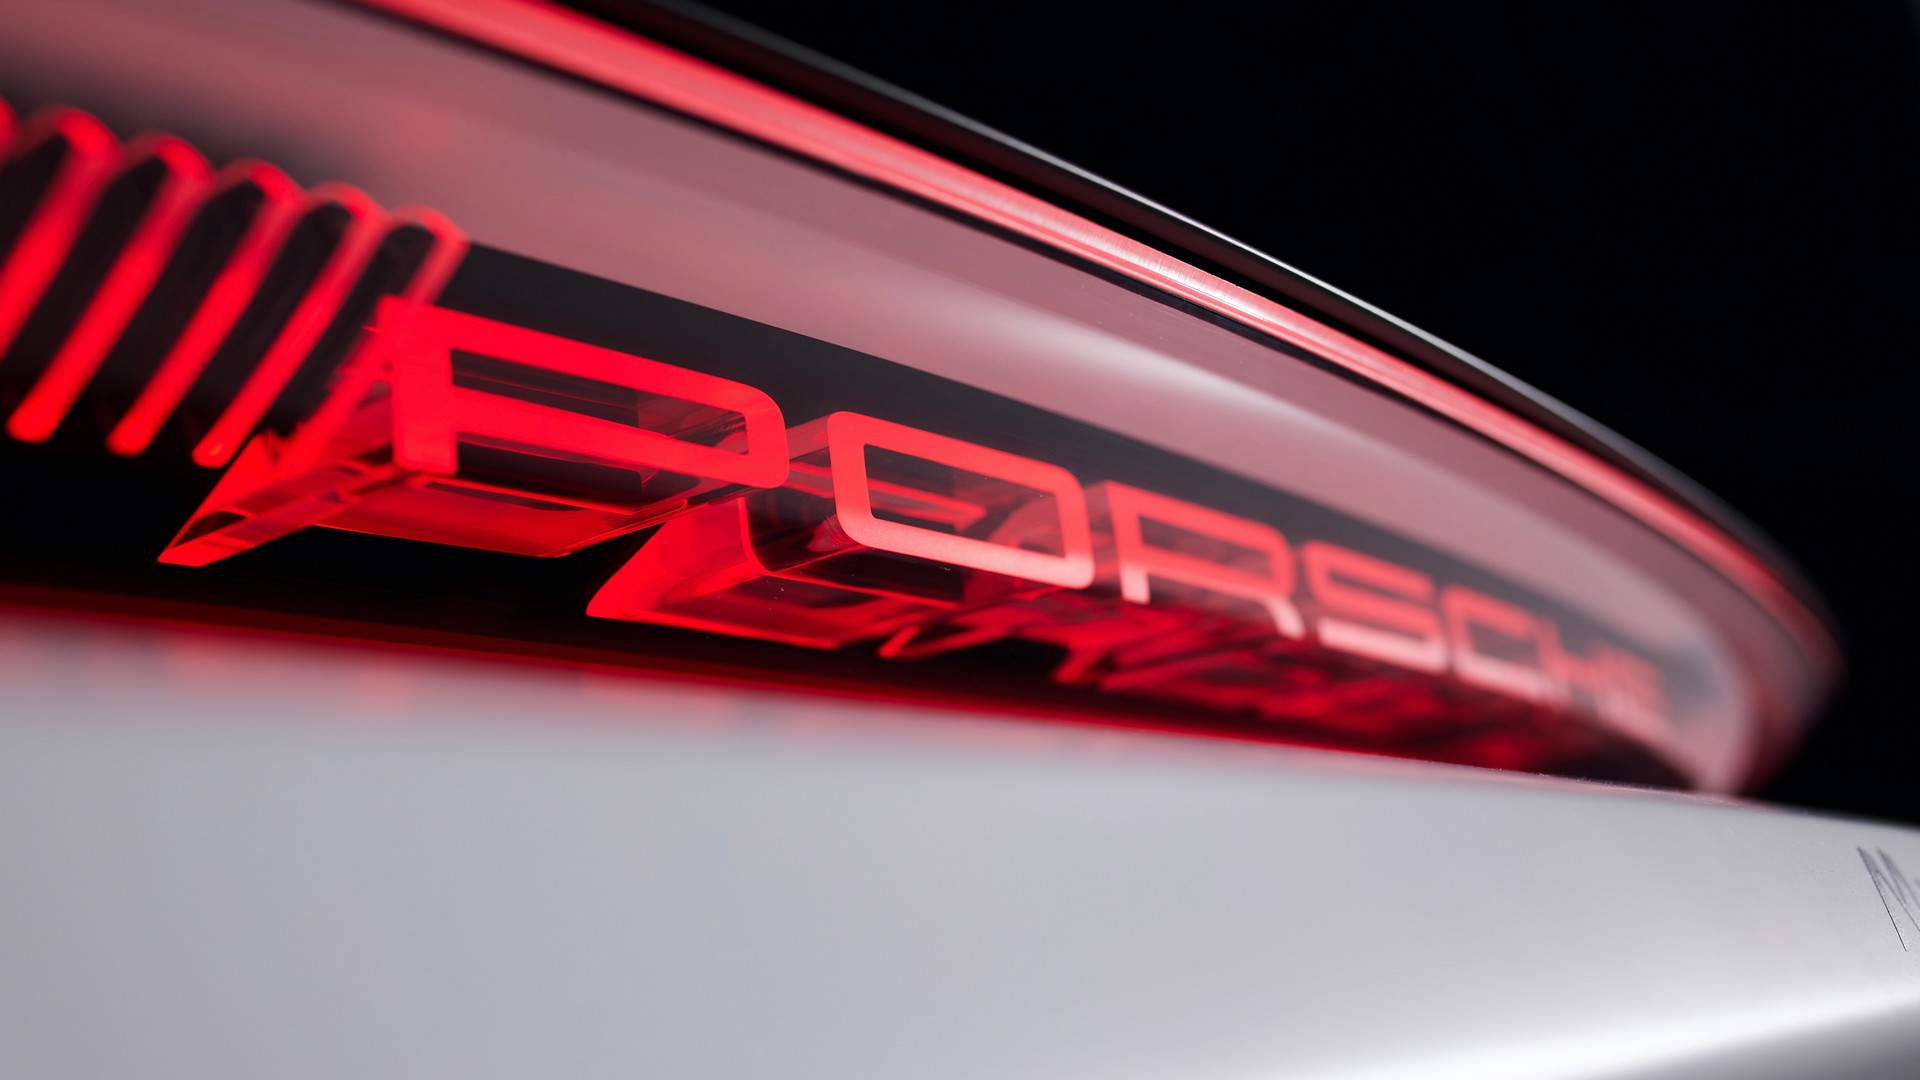 Porsche hé lộ xe mới ra mắt ngày mai với cụm đèn hậu 3D - Ảnh 1.